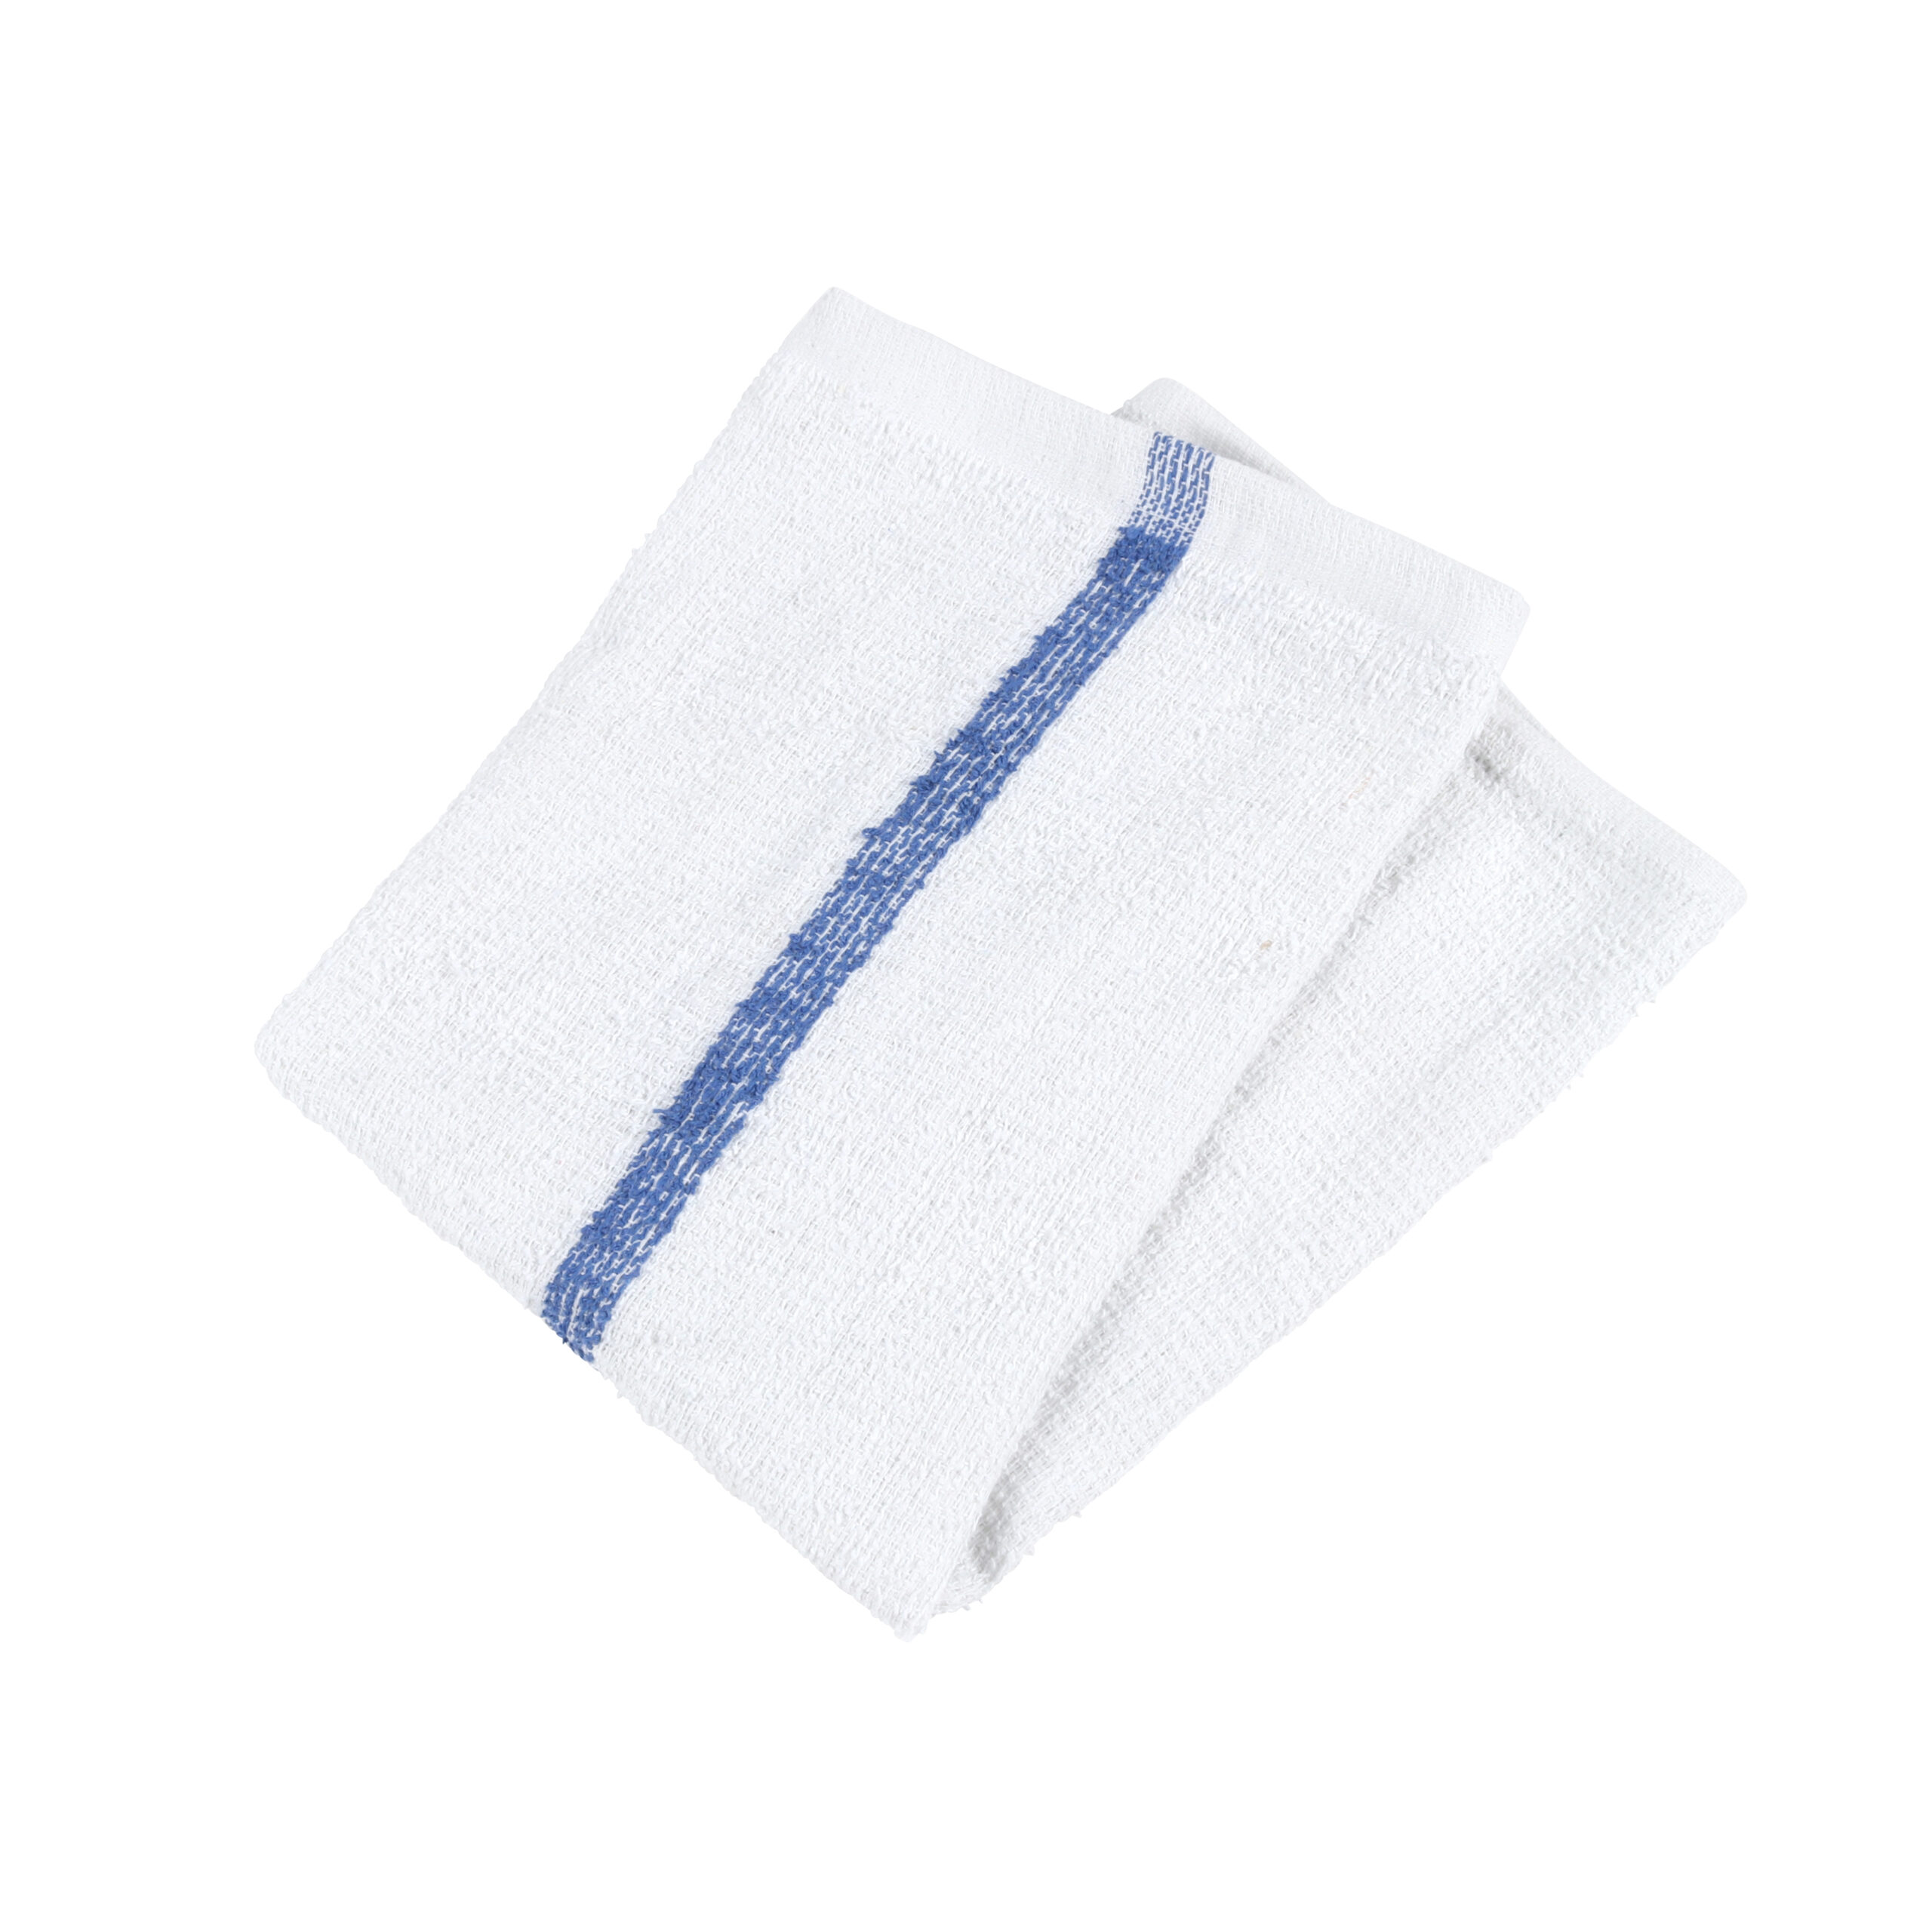 Choice 16 x 19 Blue Striped 32 oz. Cotton Bar Towels in Bulk